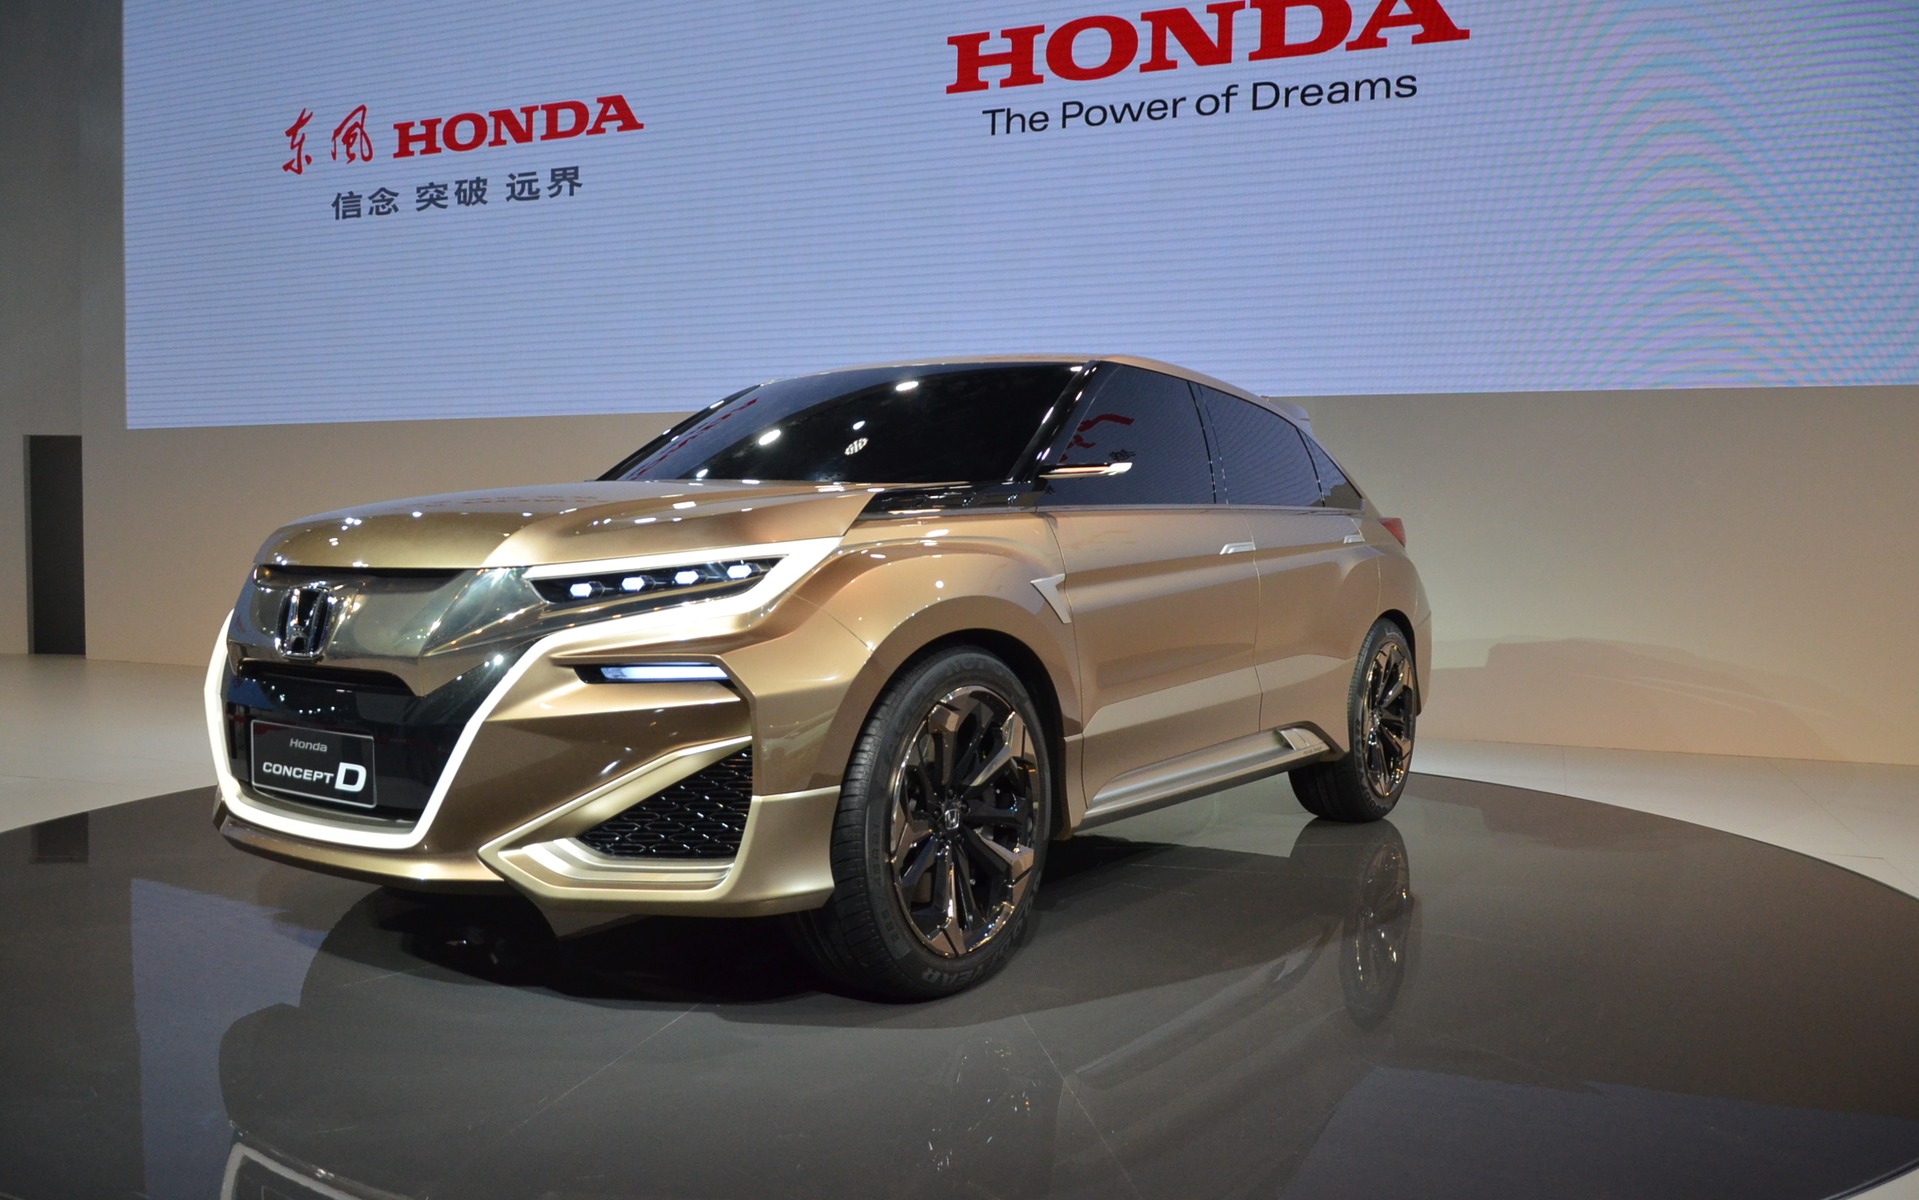 Honda Concept D #19